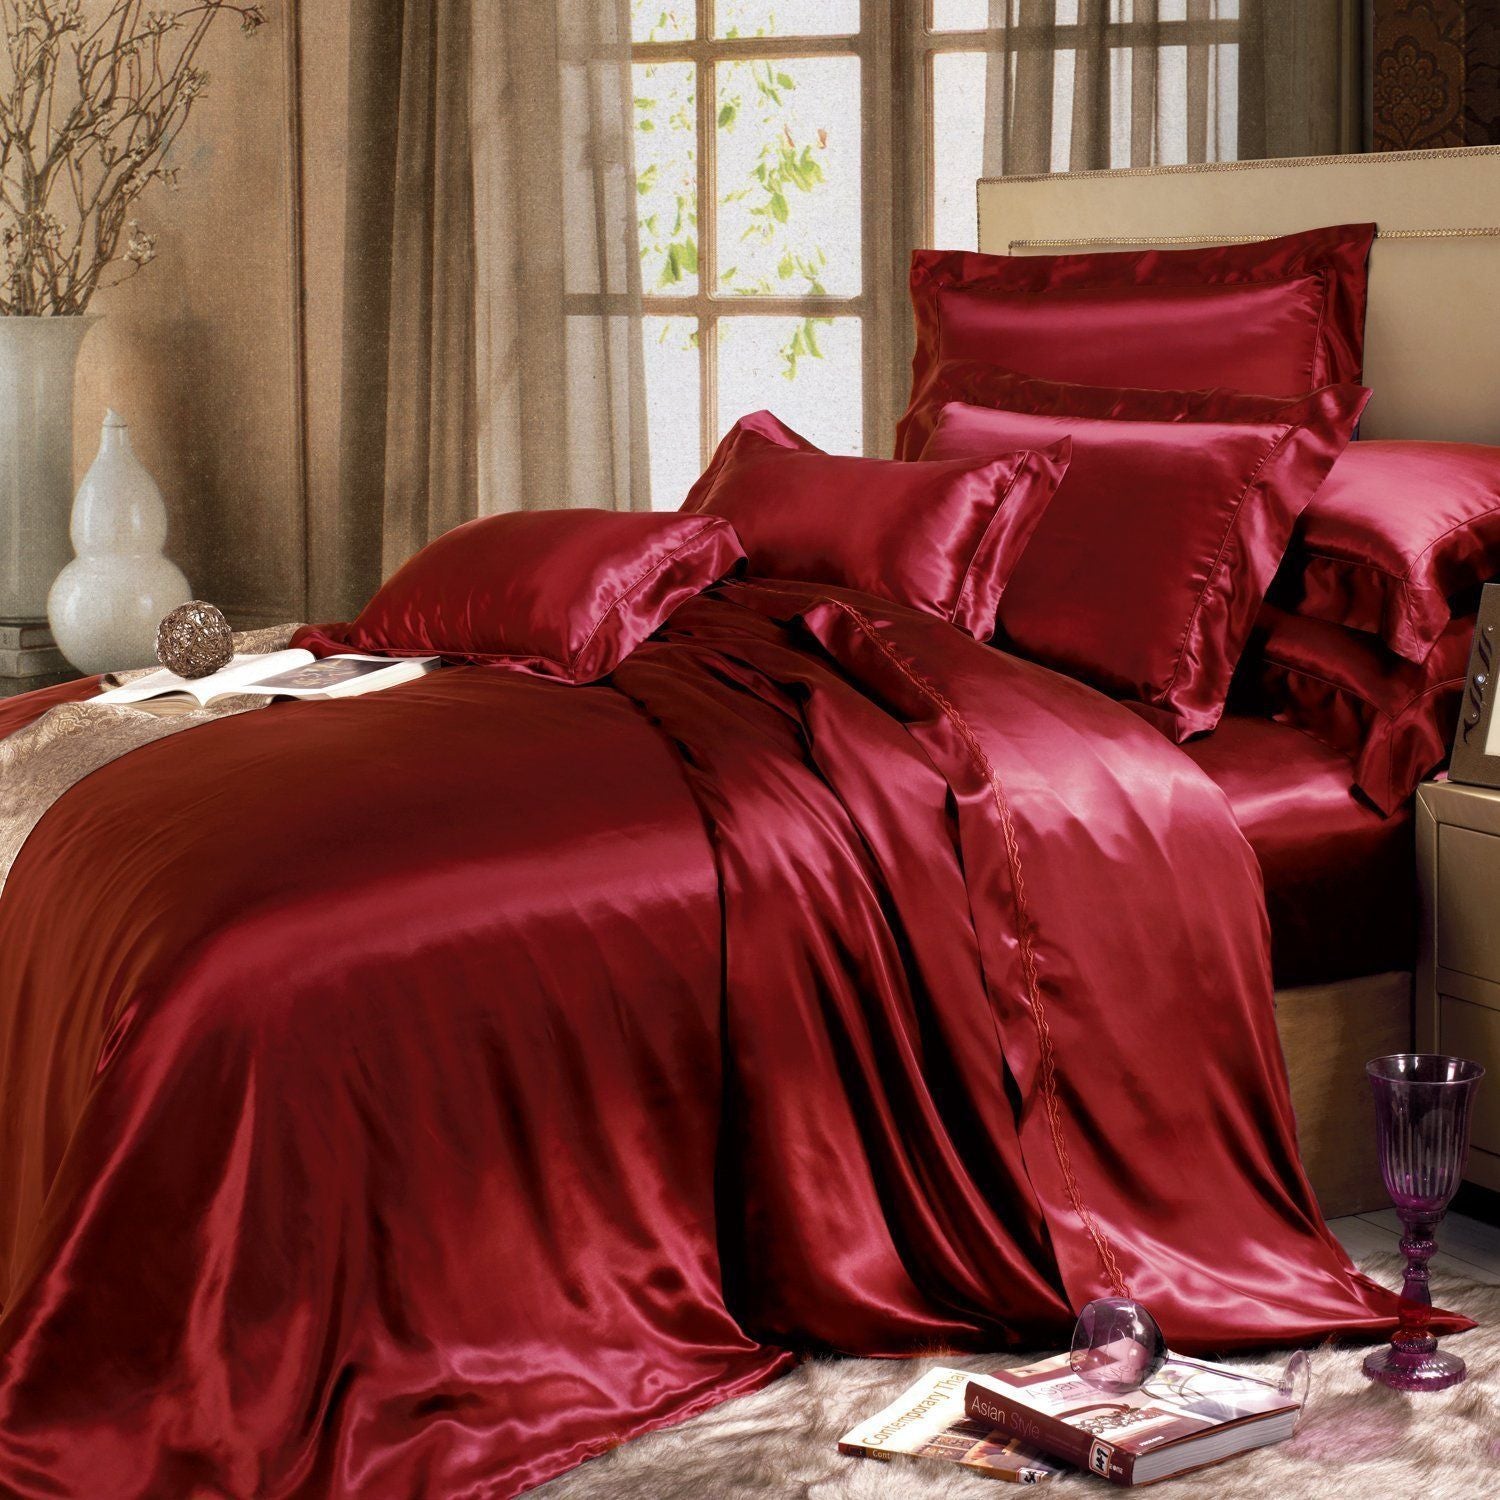 silk sheets queen amazon